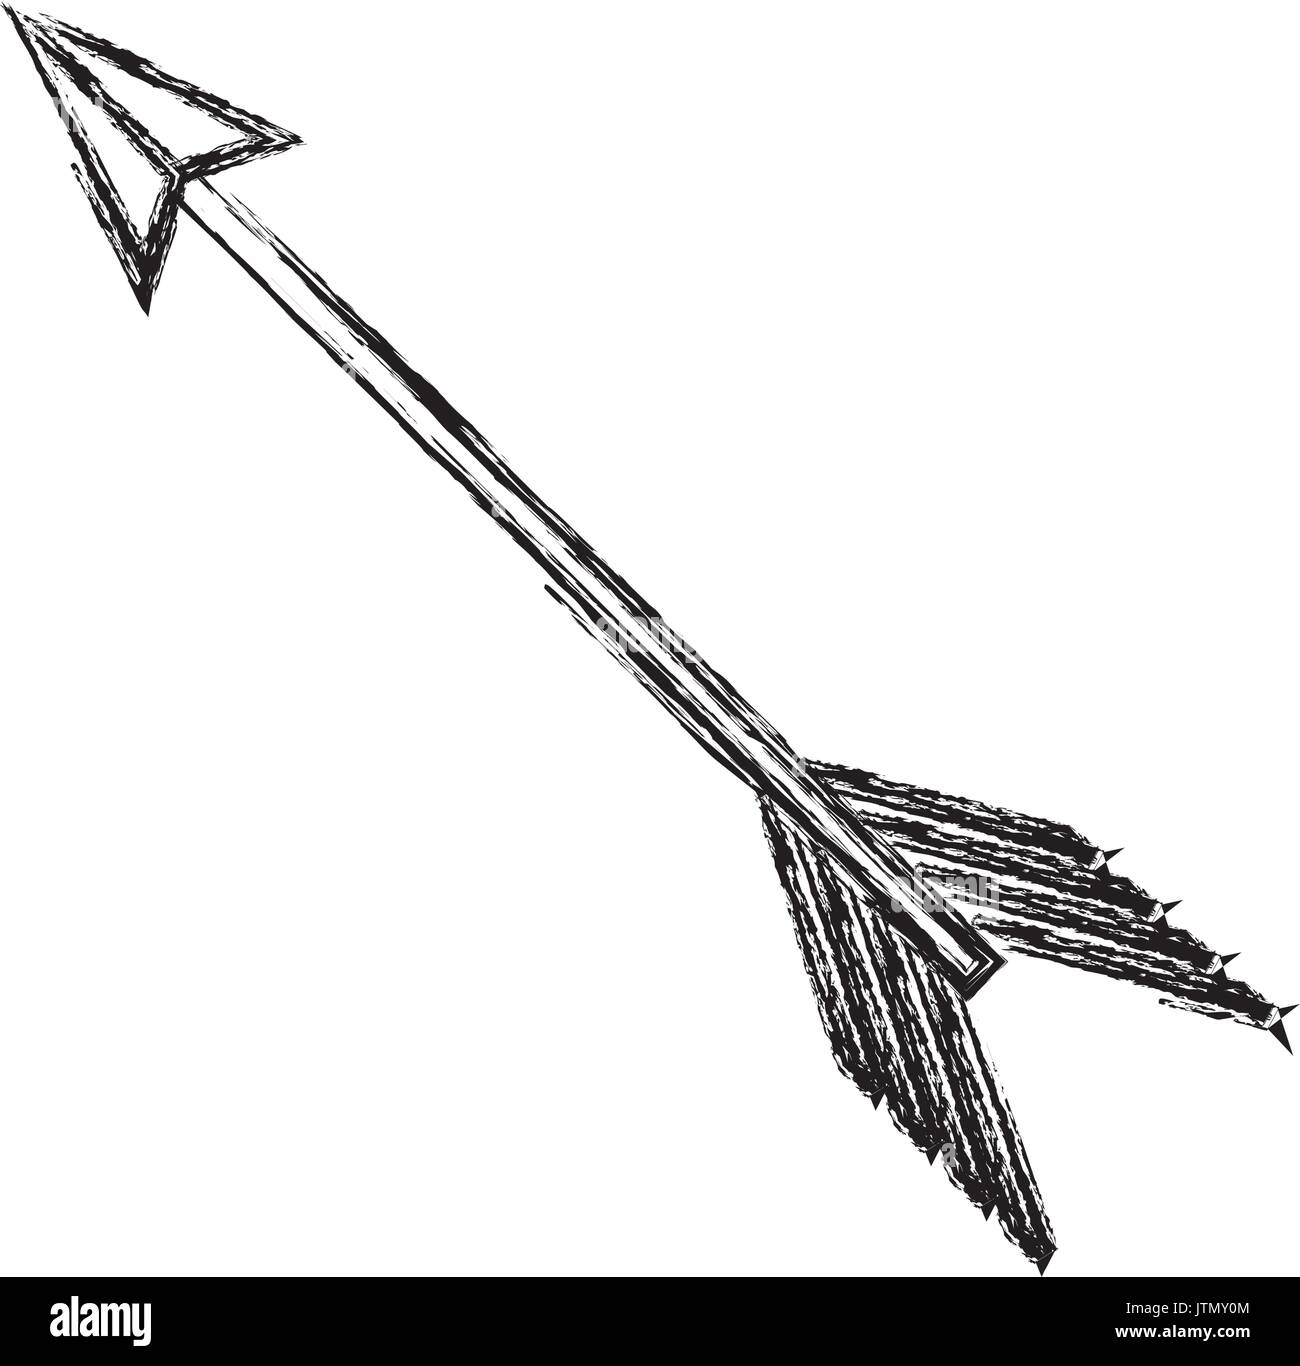 Arch bow arrow Stock Vector Image & Art - Alamy